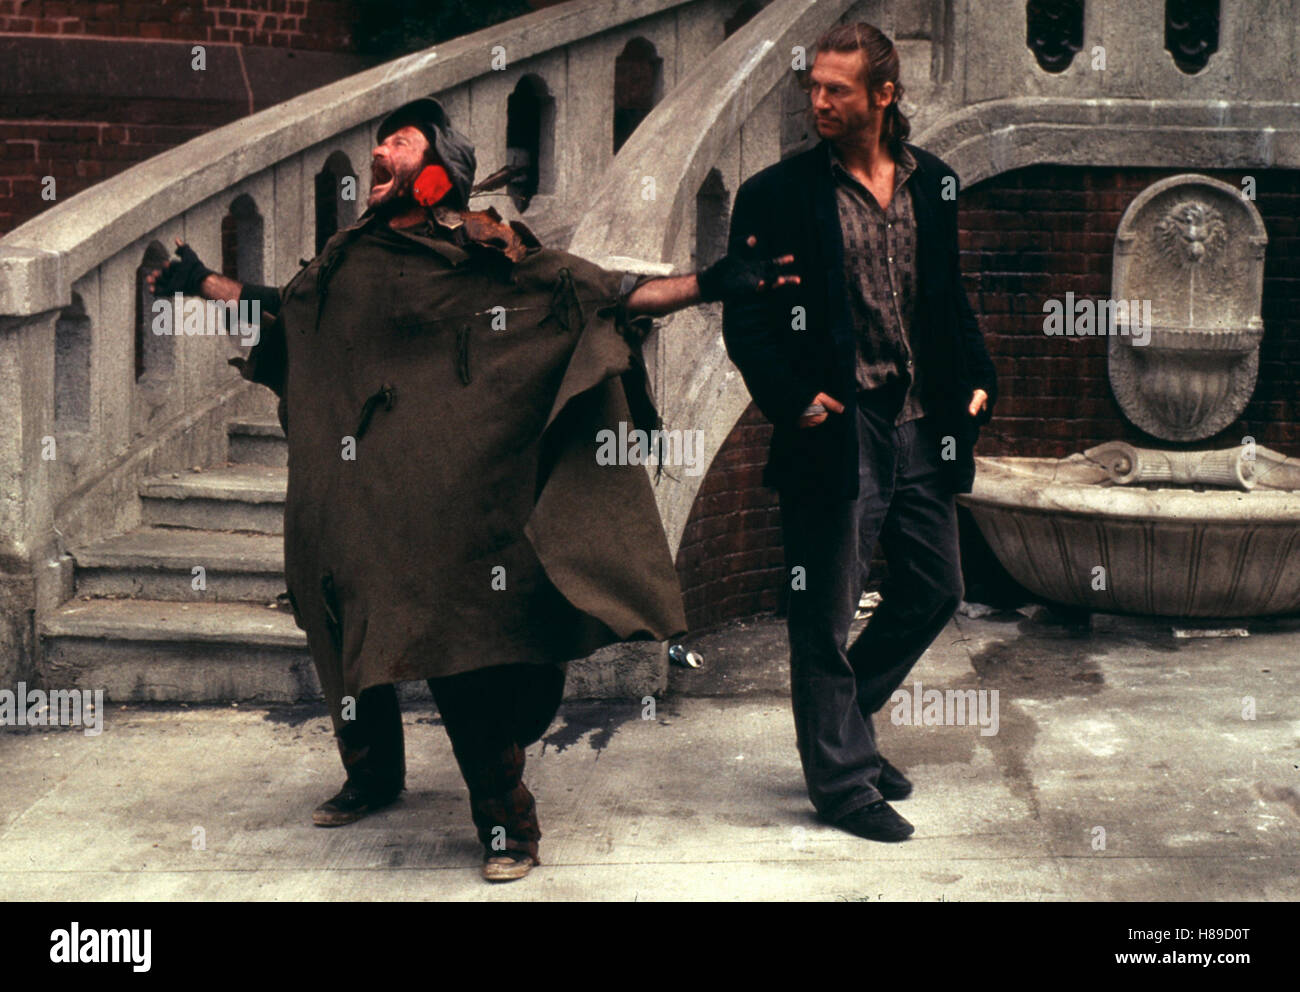 König der Fischer, (THE FISHER KING), USA 1991, Regie: Terry Gilliam, ROBIN WILLIAMS, JEFF BRIDGES, Stichwort: Treppe, Brunnen, Obdachlose Stock Photo